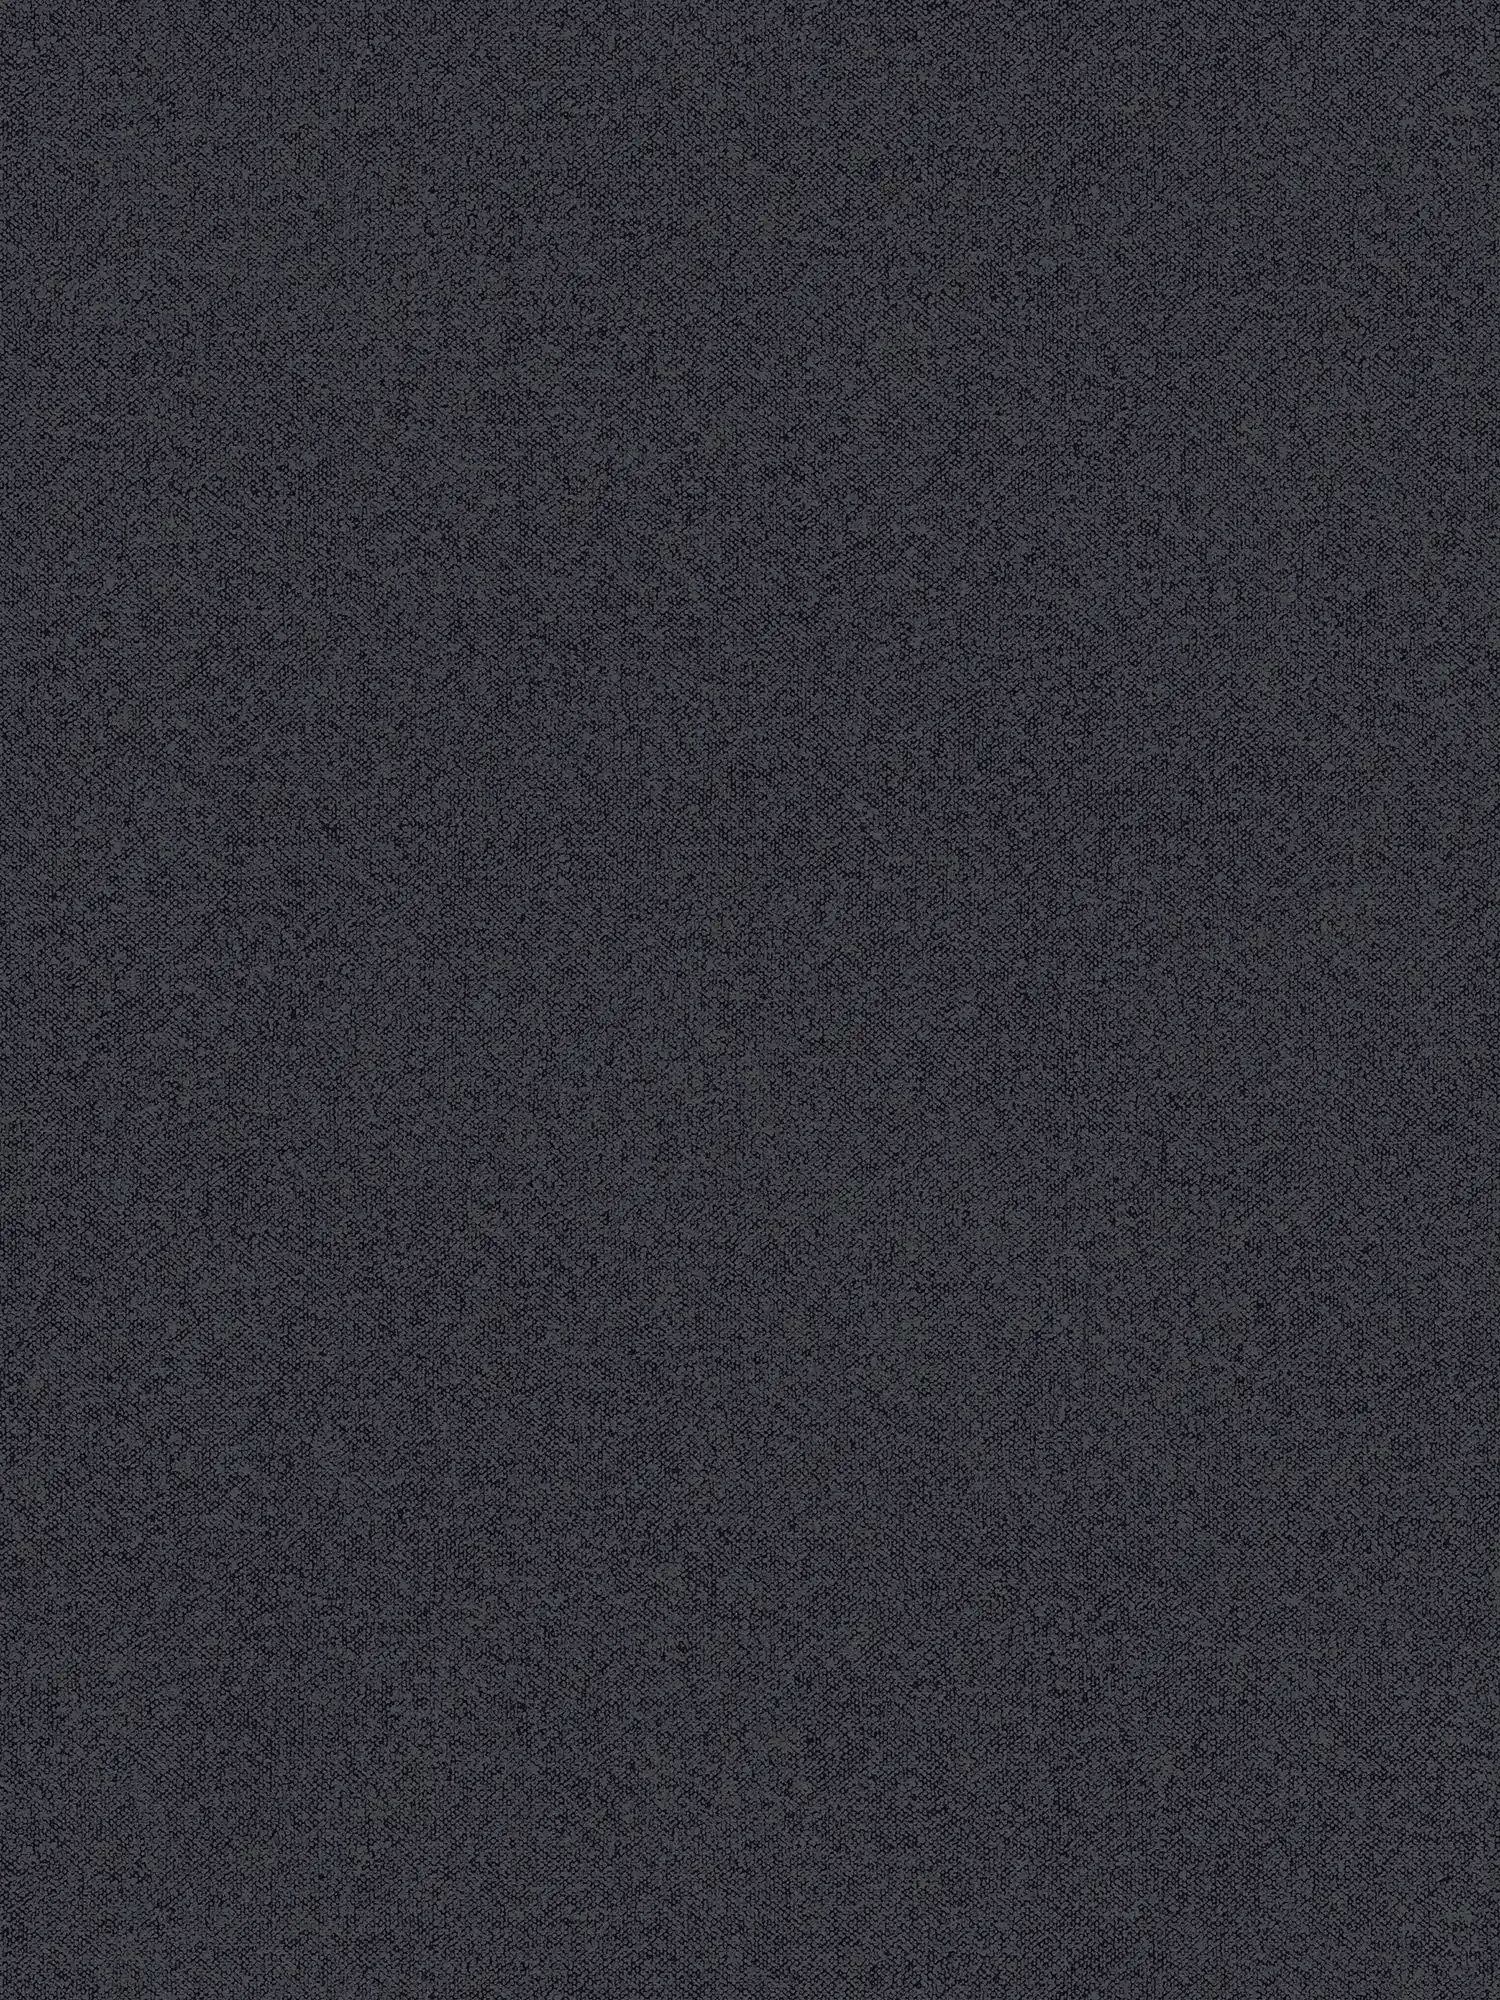 Carta da parati a tinta unita con aspetto lino - nero, grigio
